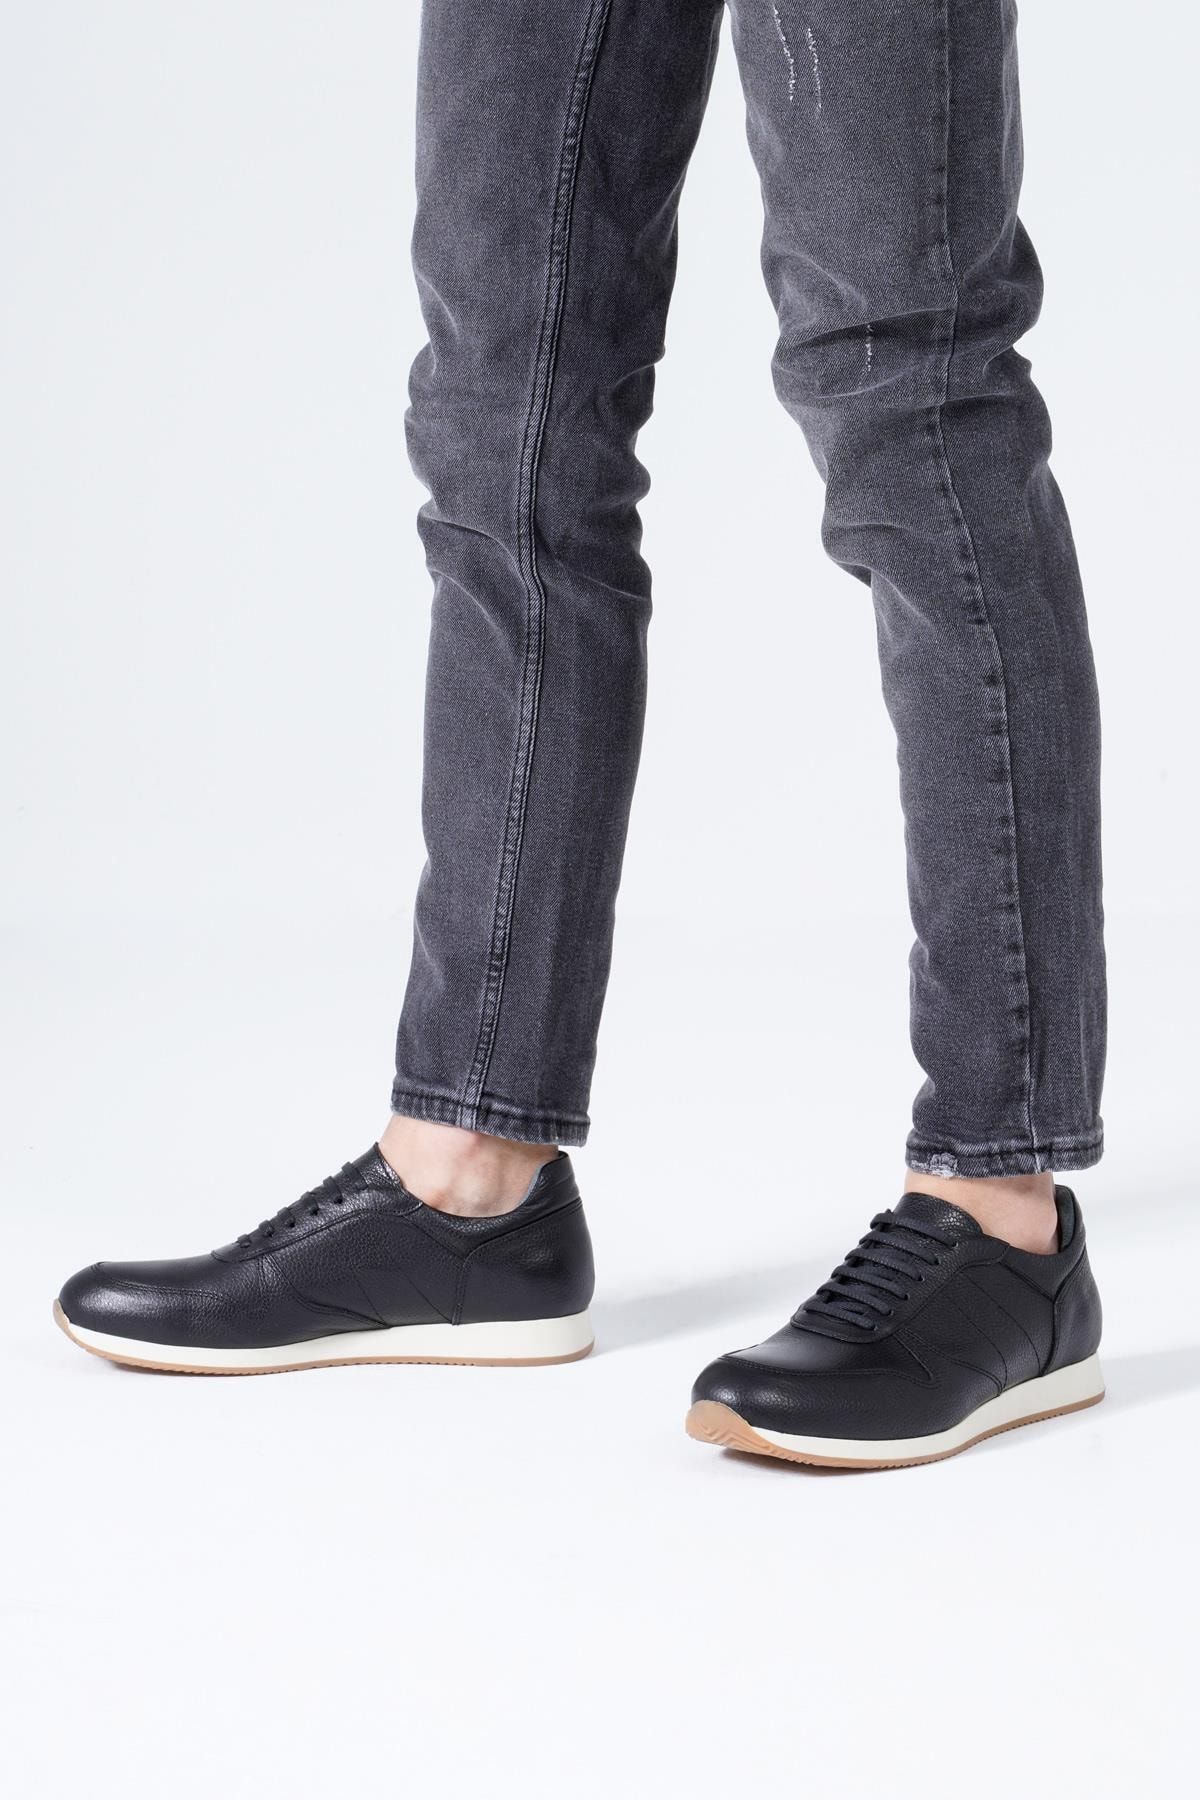 CZ London Siyah - Hakiki Deri Erkek Spor Ayakkabı Bağcıklı Beyaz Taban Sneaker